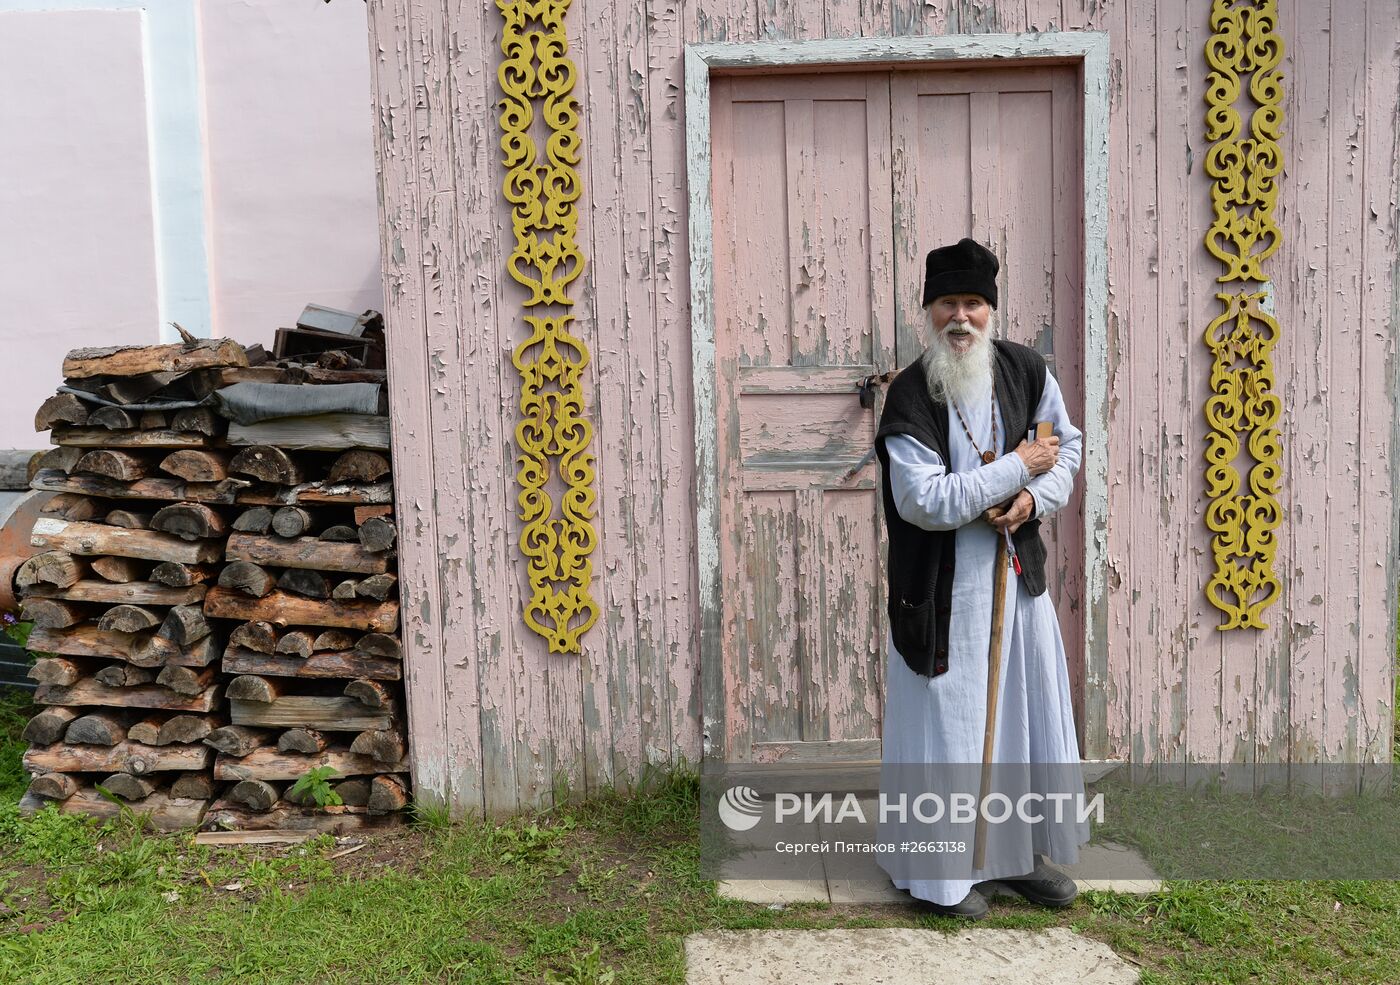 Сельский священник, настоятель храма святых Флора и Лавра в селе Флоровском в Ярославской области